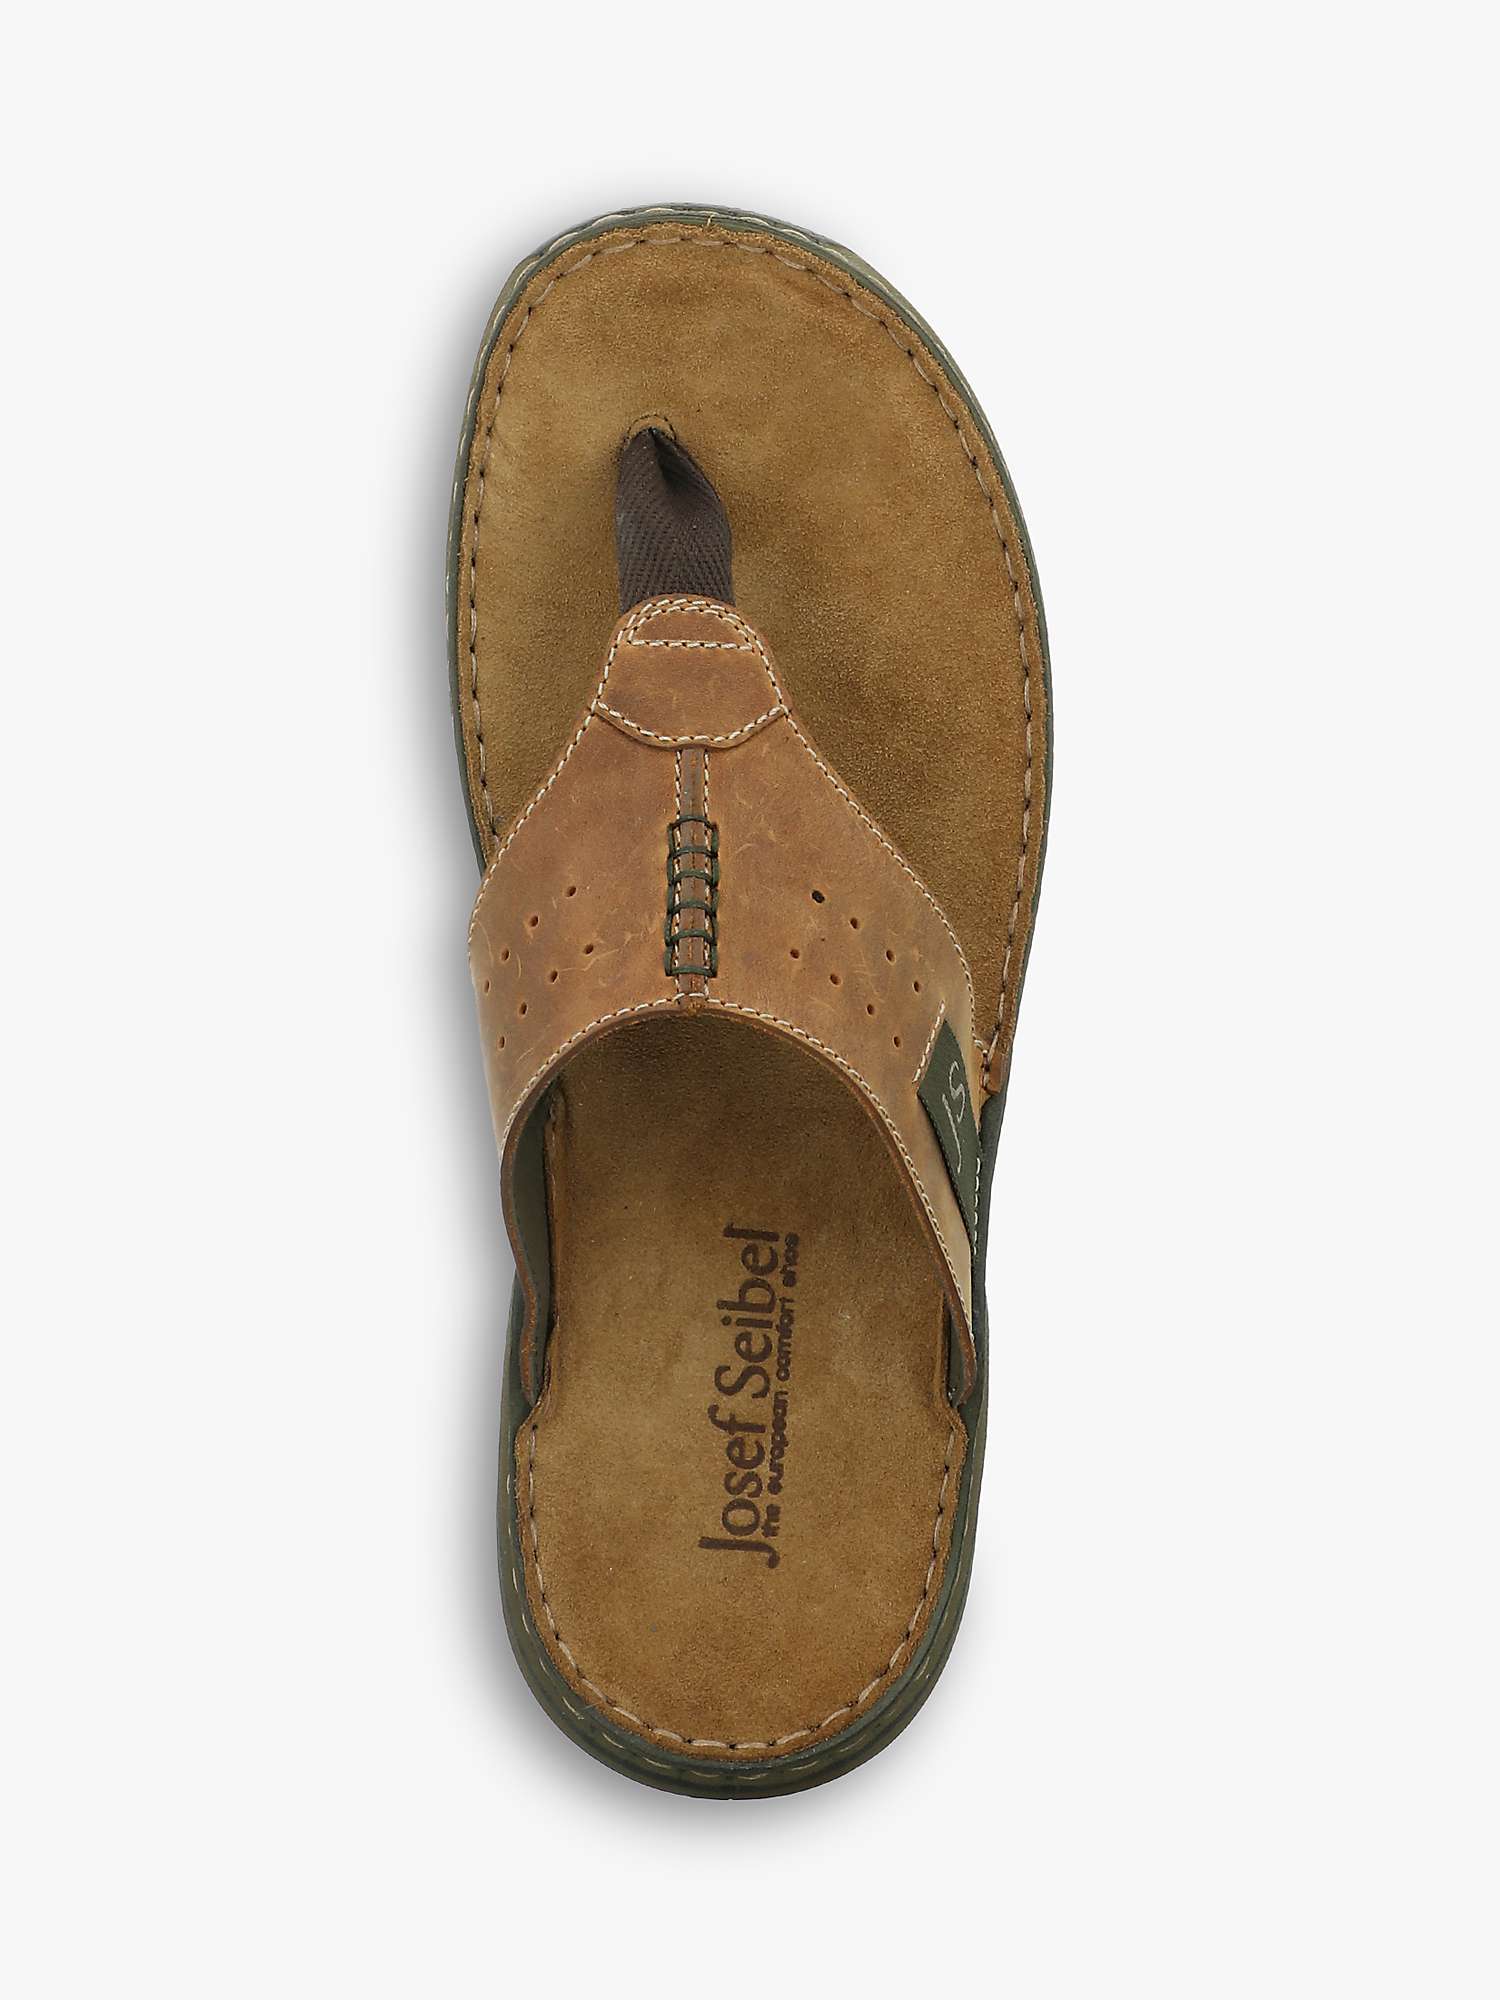 Buy Josef Seibel Maverick 05 Leather Footbed Sandals, Jeans Online at johnlewis.com